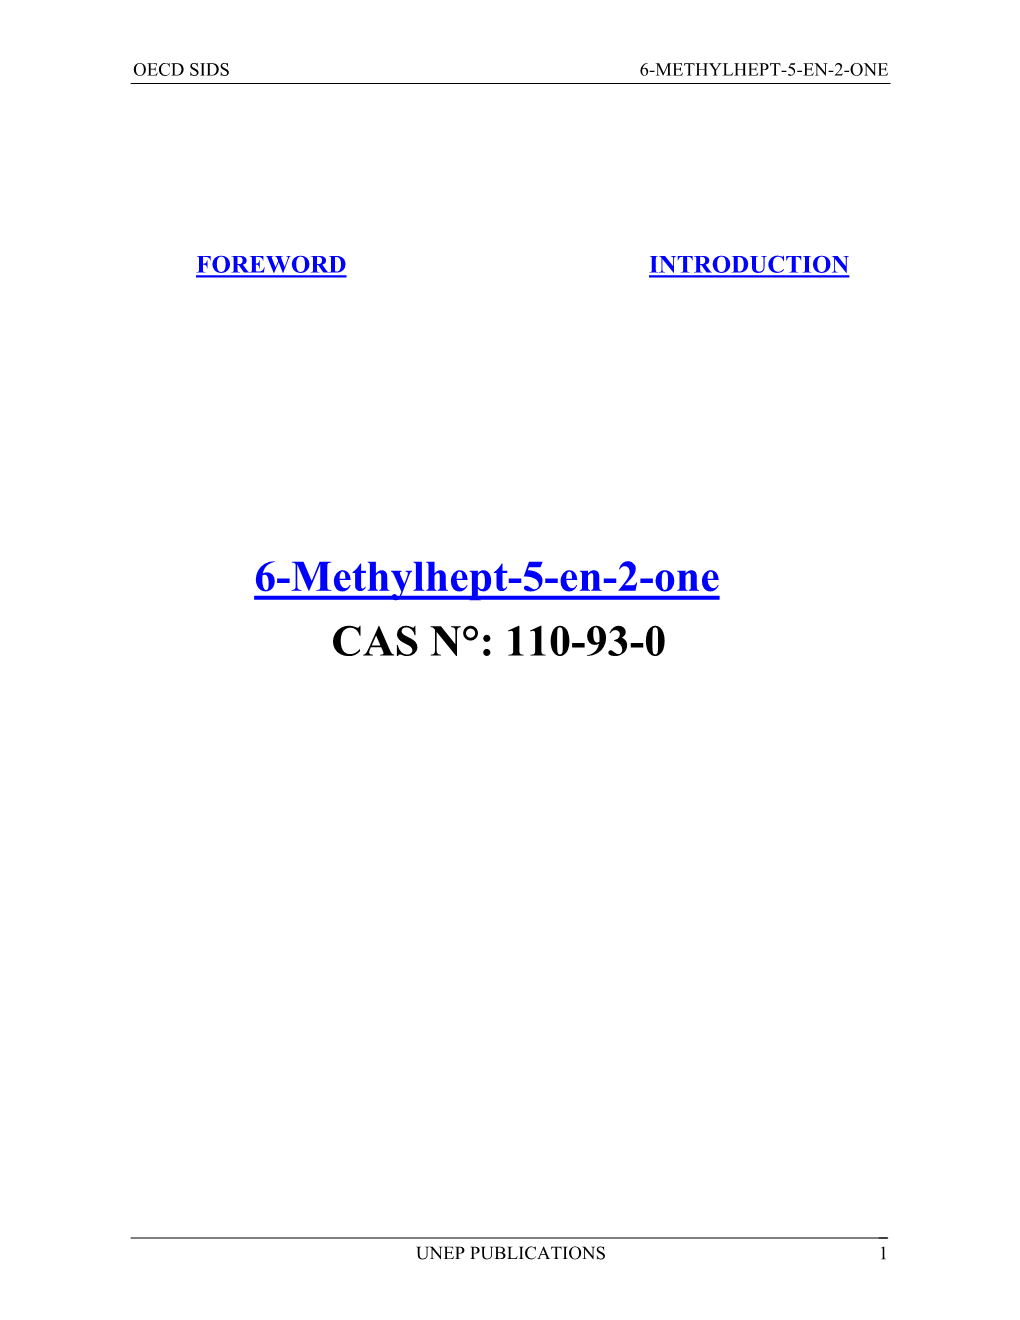 6-Methylhept-5-En-2-One CAS N°: 110-93-0